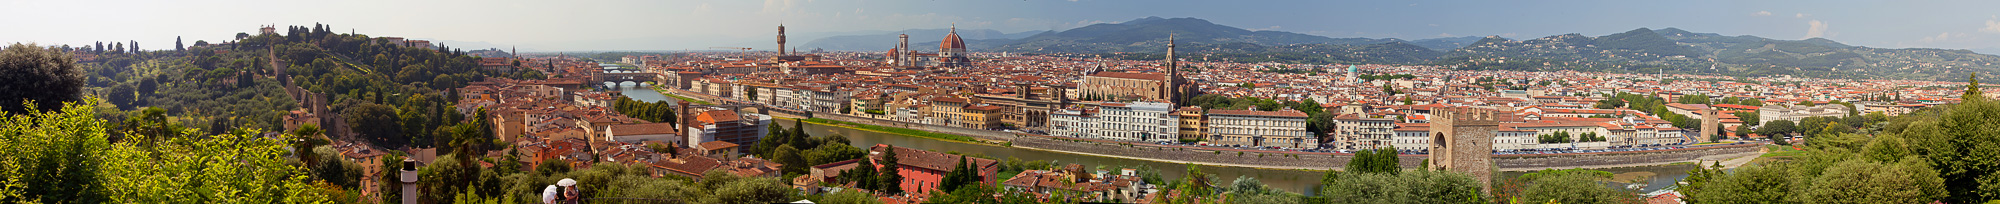 Florence 180 - Firenze 180 Нажмите на изображение, чтобы посмотреть его на полном экране.